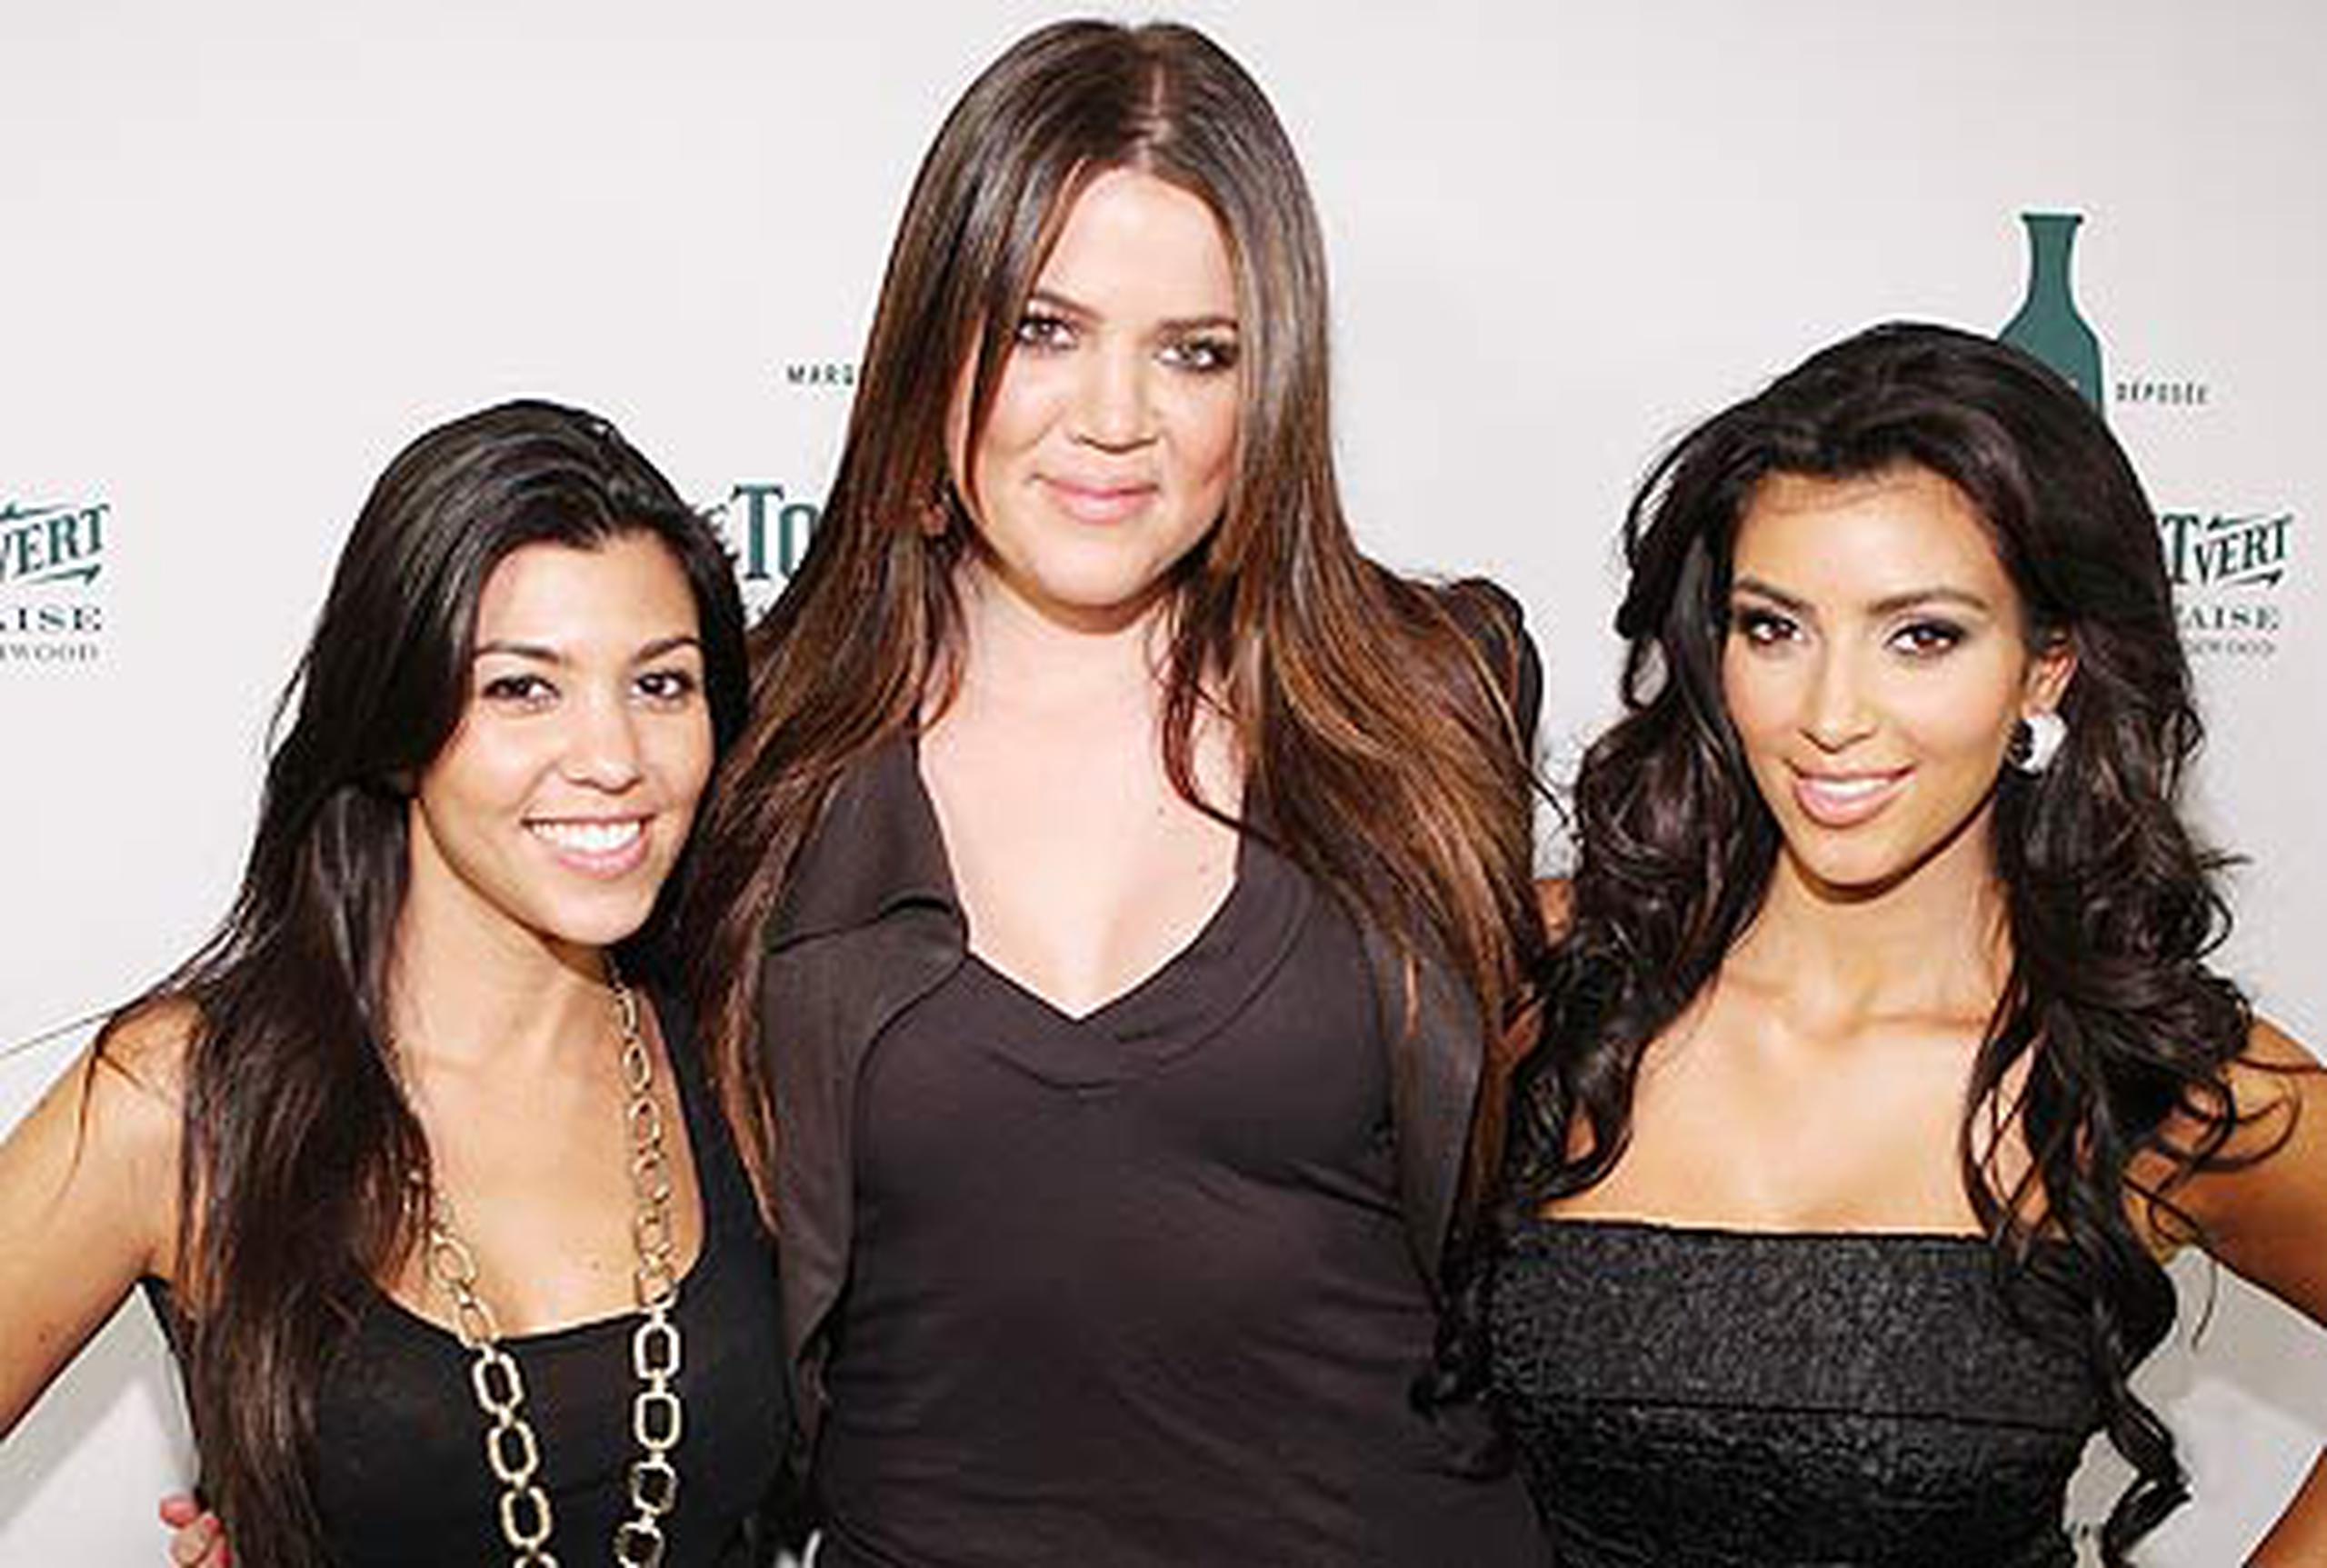 Hermanas Kardashian lanzan colección de moda - Primera Hora